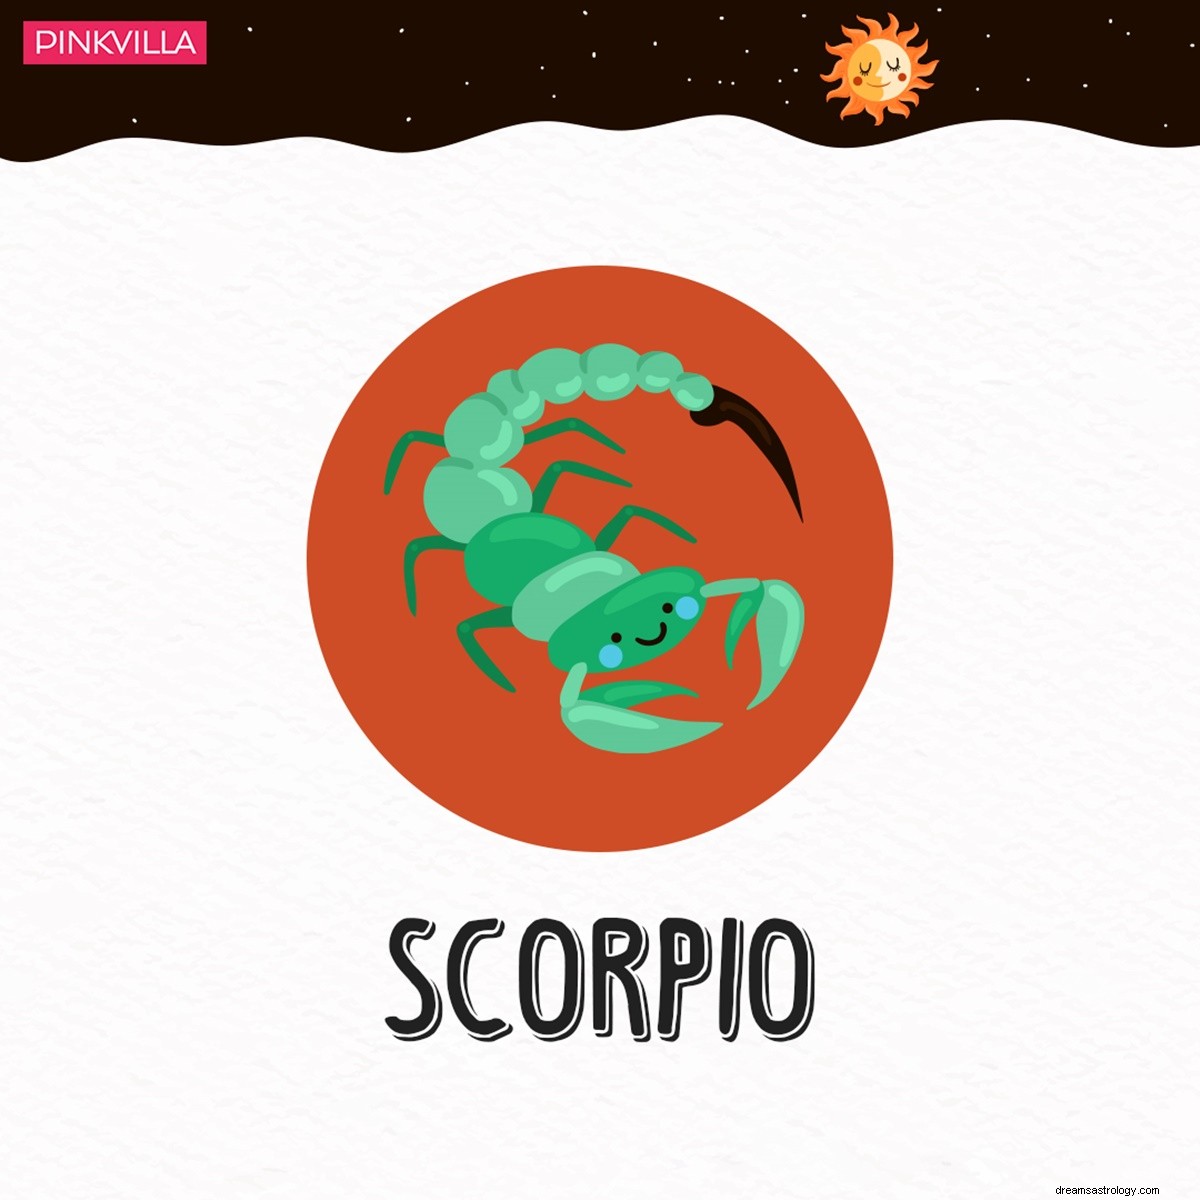 Skorpionen til Tyren:4 stjernetegn hvis kjærlighetsspråk er fysisk berøring 